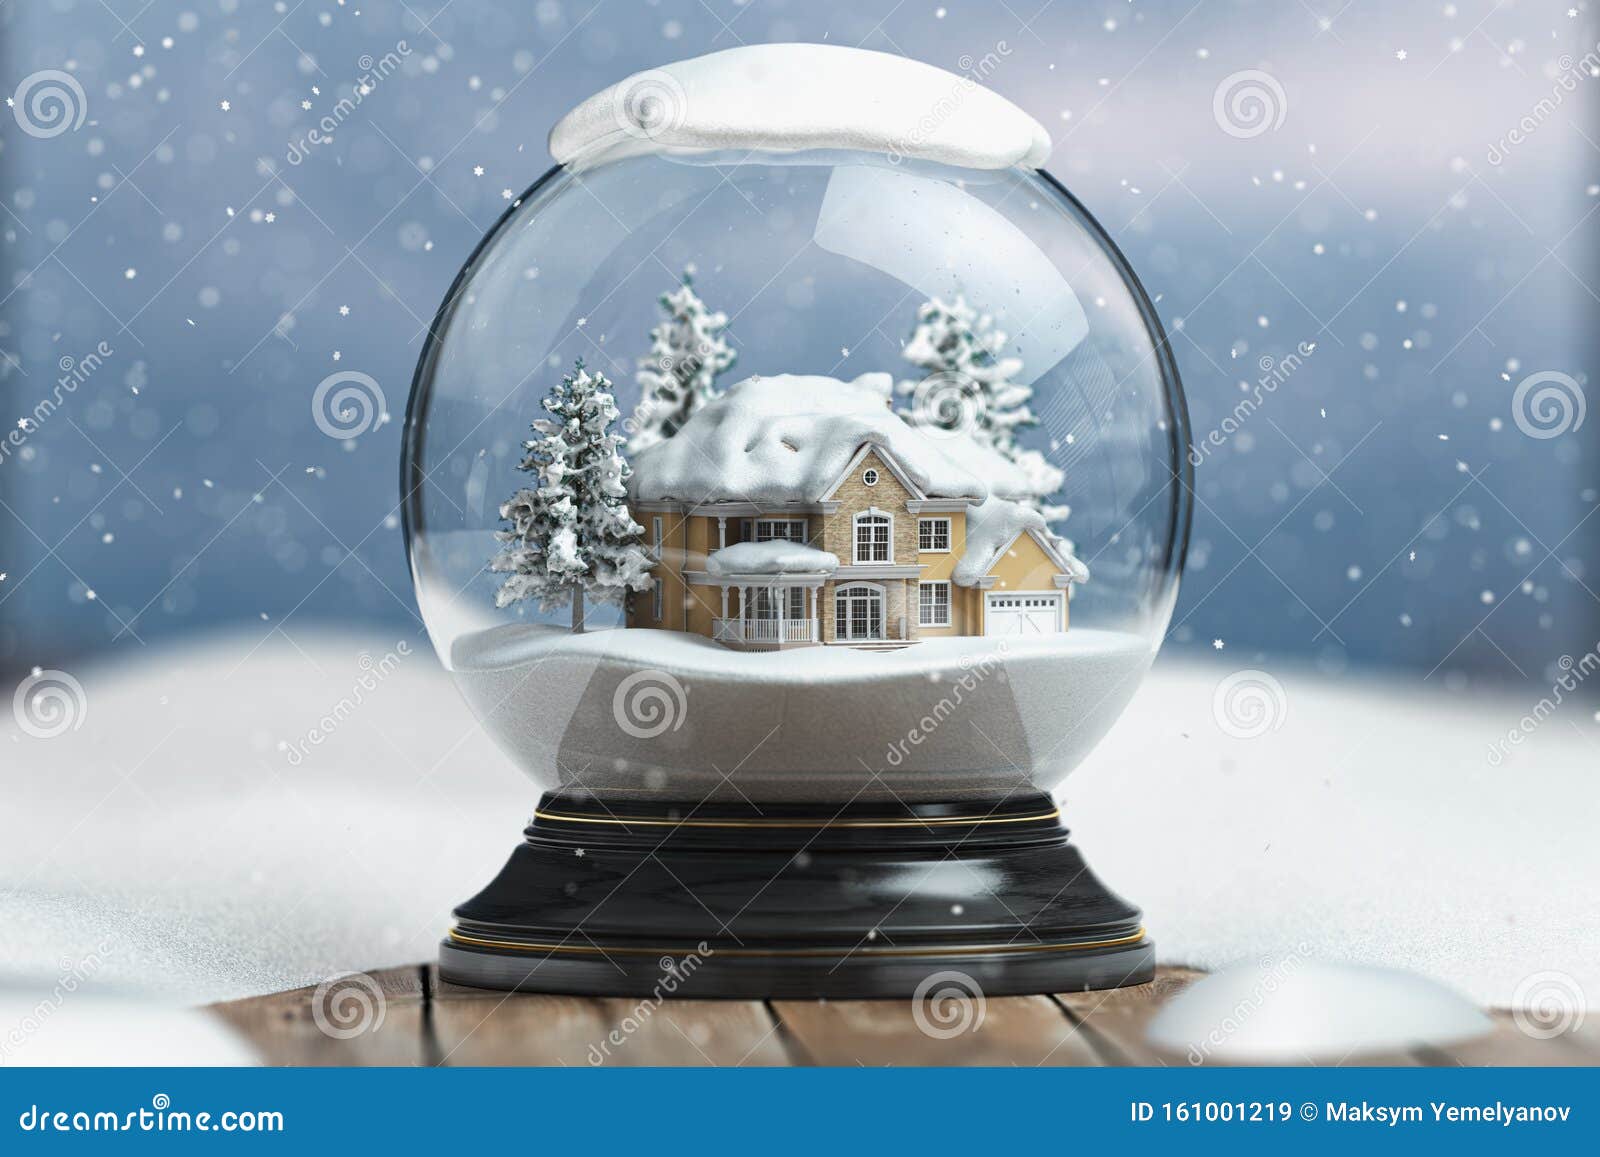 WeRChristmas Globo de Nieve Color Blanco y Oro con casa Hecha de Nieve Ideal como decoración navideña de 16 cm 